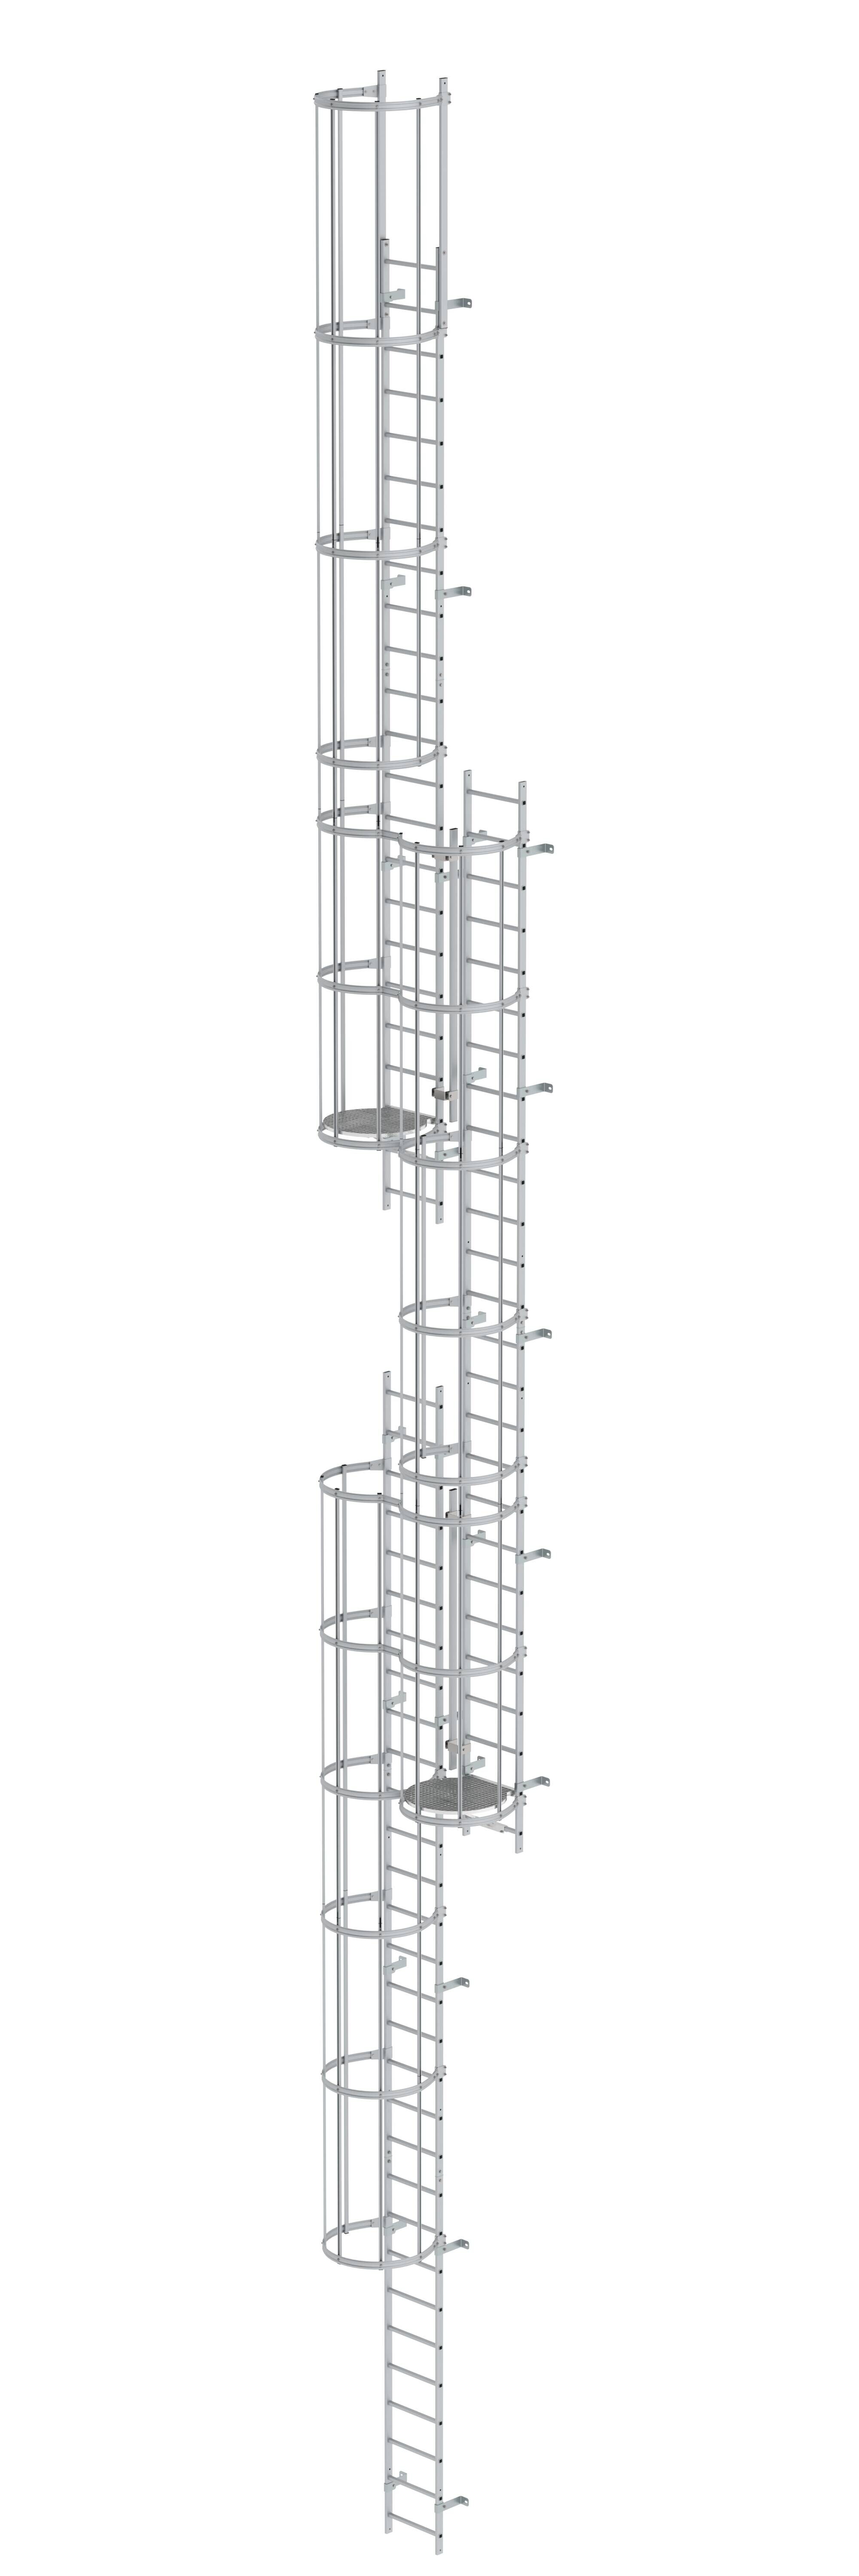 Mehrzügige Steigleiter mit Rückenschutz (Maschinen) Aluminium blank 17,16m